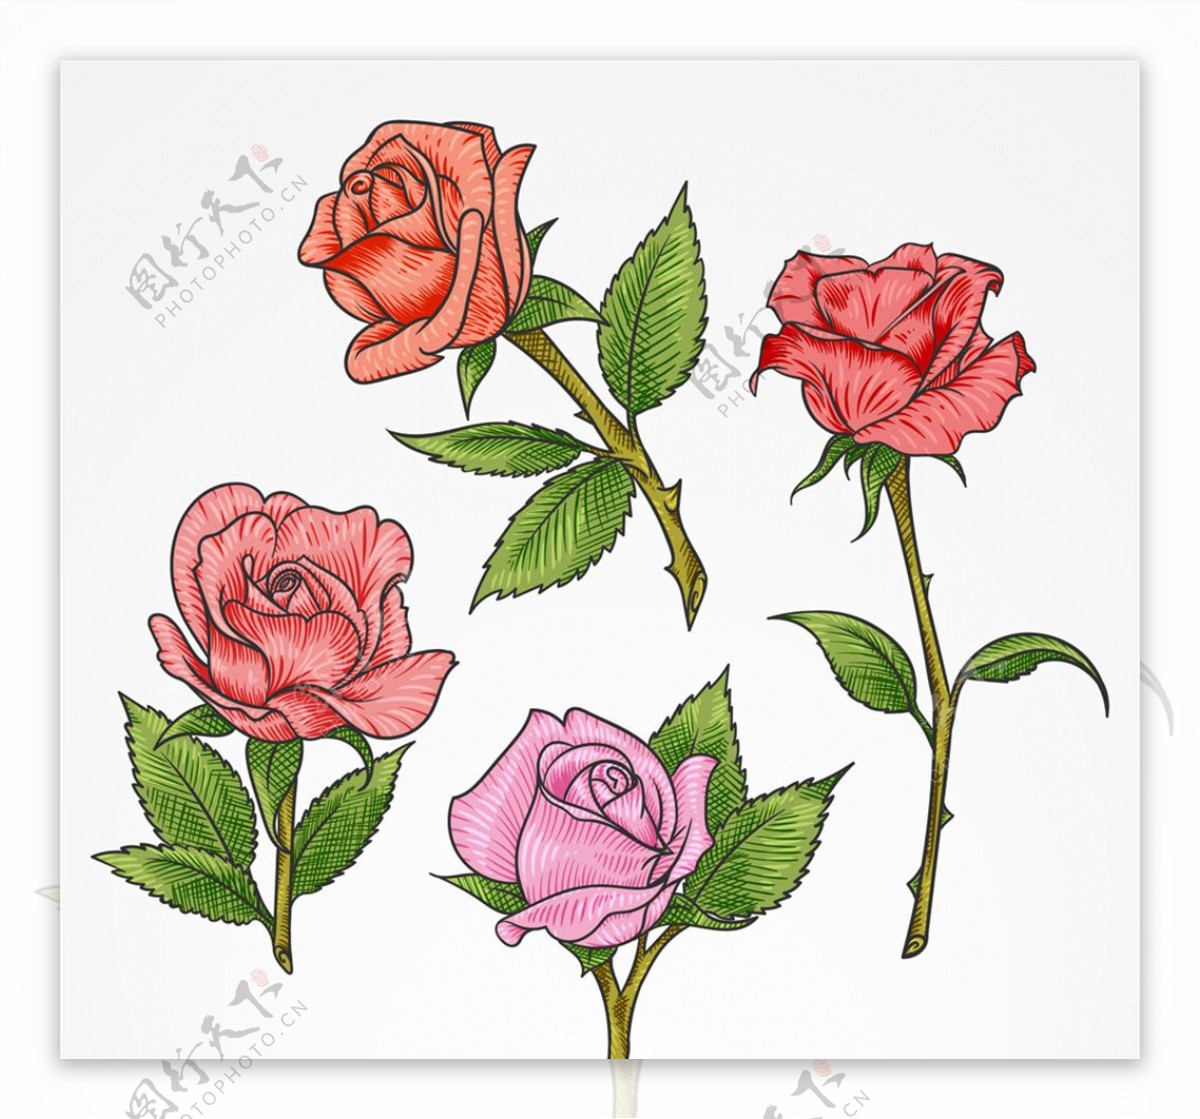 彩色单枝玫瑰花矢量素材